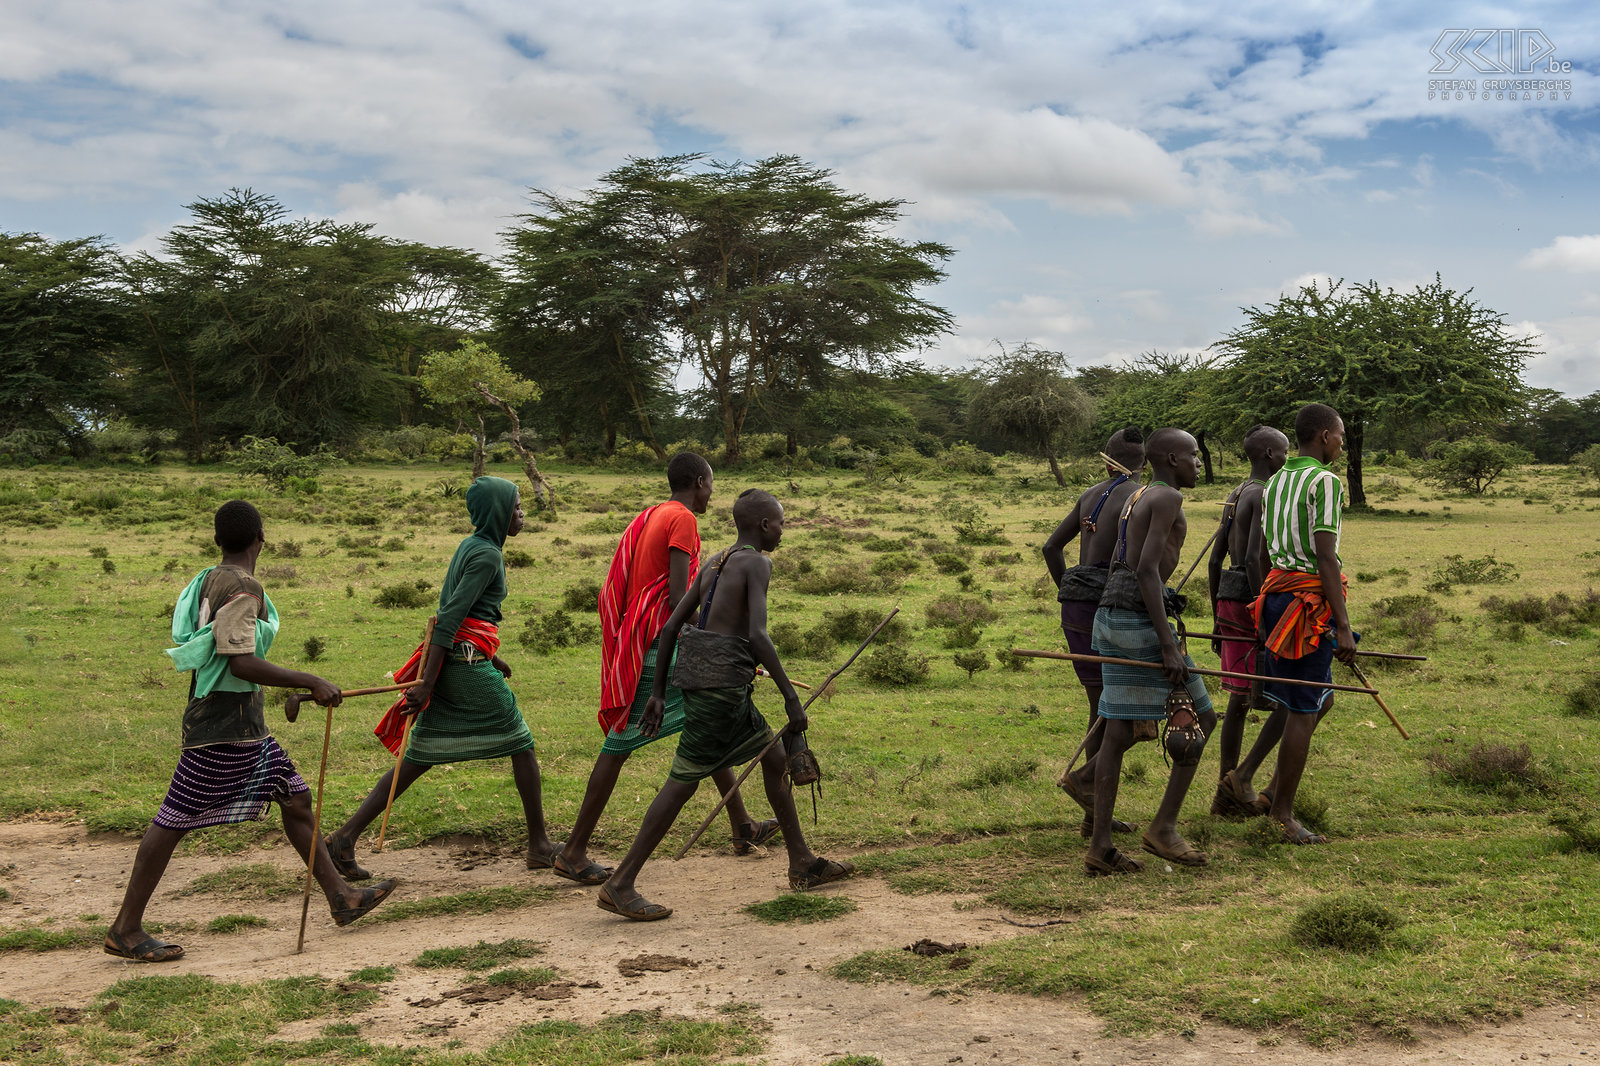 Kisima - Toekomstige morans Om de 6 à 10 jaar organiseren de Samburu clans een lmuget-ceremonie voor de overgang naar een volgende leeftijdsgroep. Jonge mannen van 14 tot 20 jaar worden besneden en worden daarna moran (krijger). Dit is de belangrijkste gebeurtenis in het leven van een jonge Samburu. <br />
<br />
De dagen voor de lmuget ceremonies verlaten ze de lorora (het tijdelijke dorp) en in groep gaan ze al zingend op pad om water en kruiden te verzamelen. Sommigen van hen dragen nog steeds de traditionele door-houtskool-zwartgeblakerde-mantel rond hun middel. Ze zingen de lebarta, een speciaal lied voor de besnijdenis. Stefan Cruysberghs